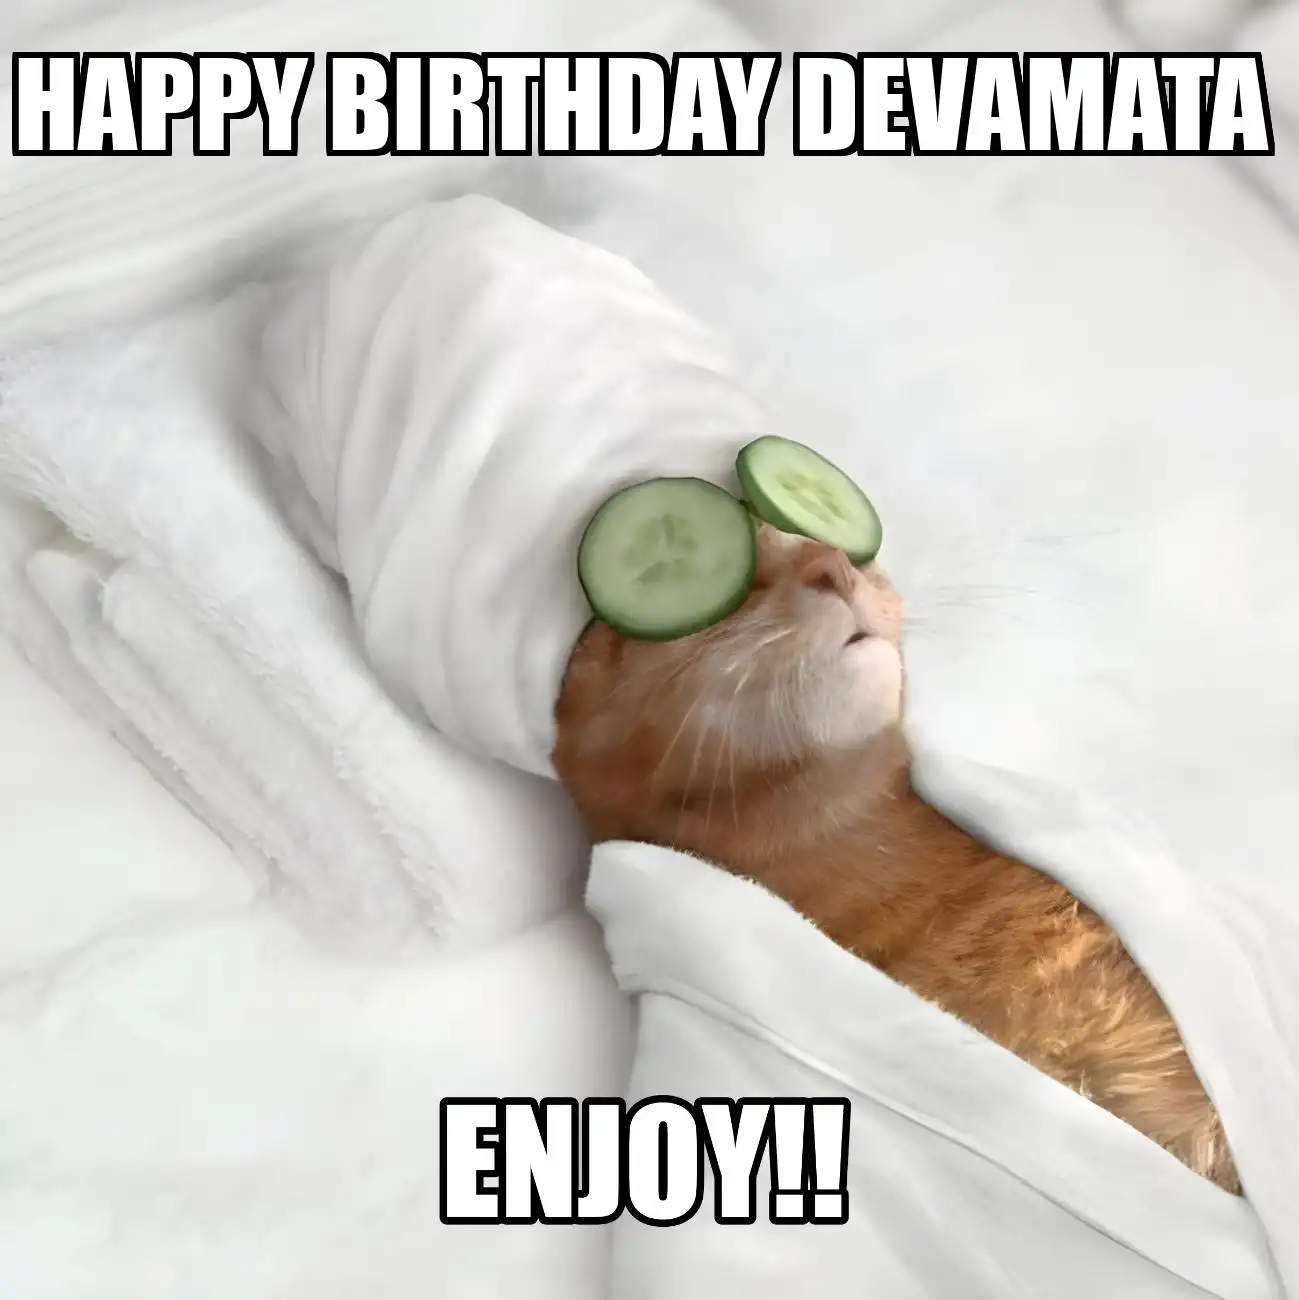 Happy Birthday Devamata Enjoy Cat Meme